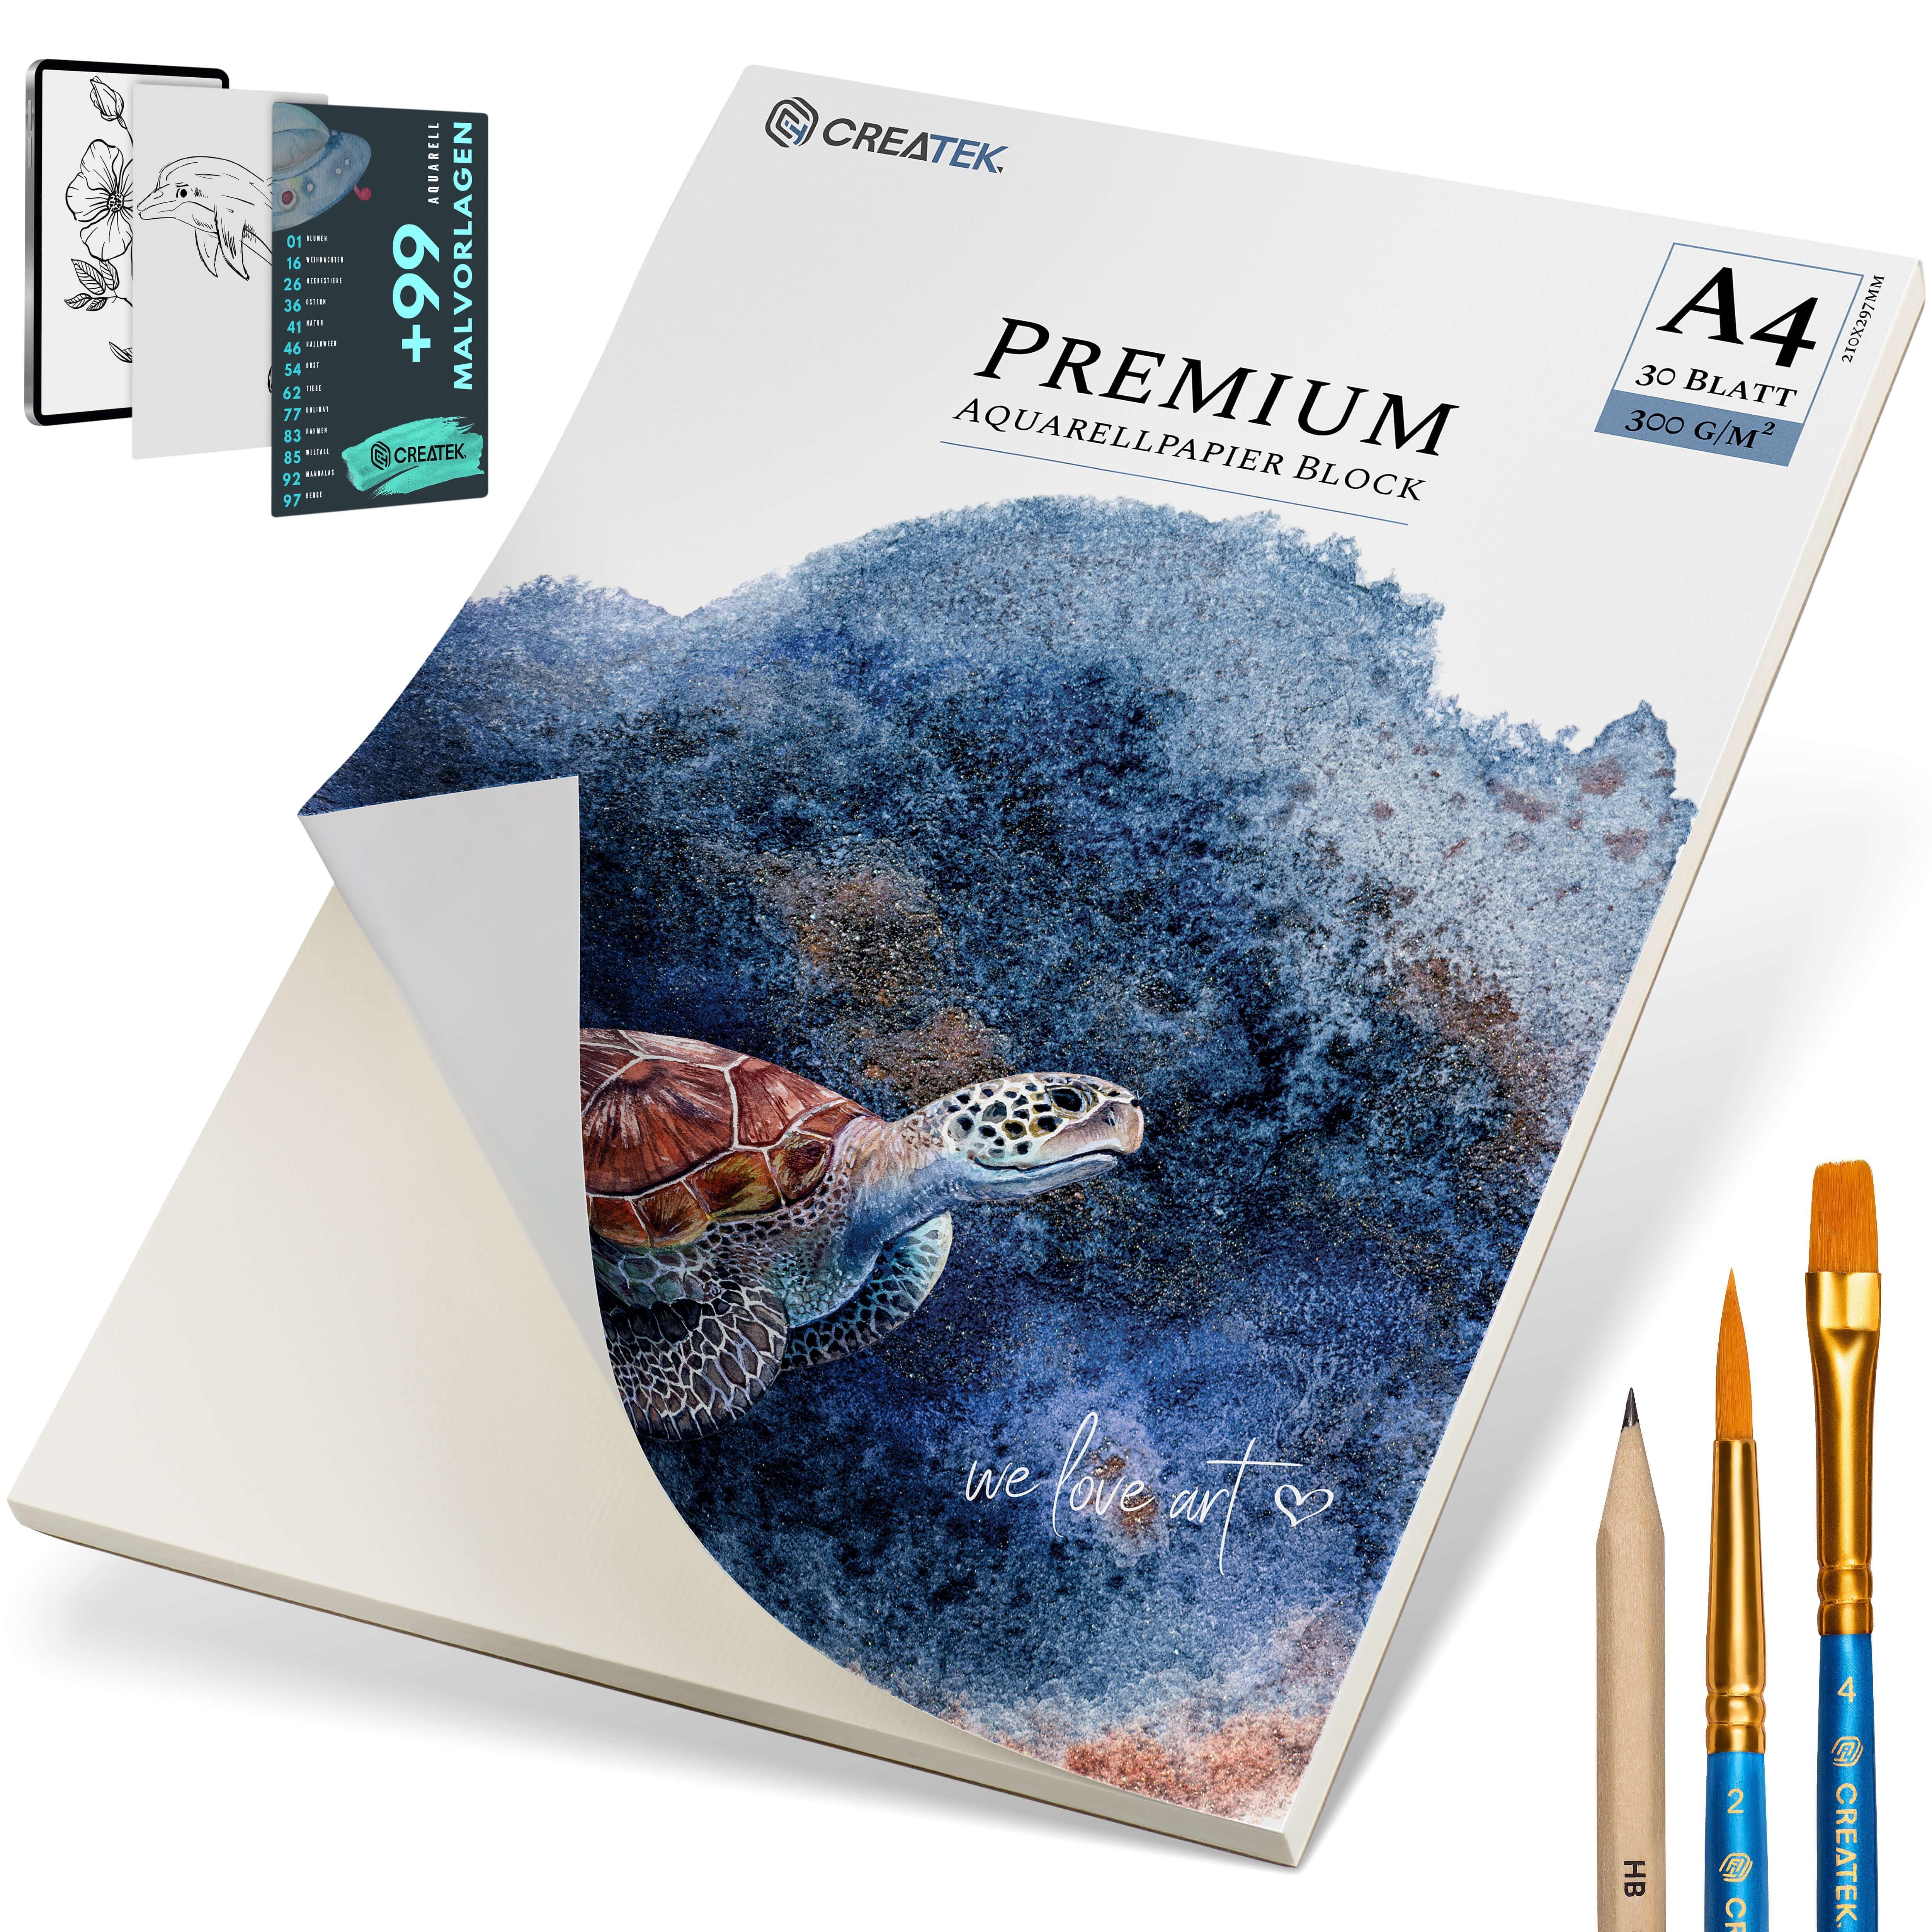 CreaTek Aquarellpapier 300g MALVORLAGEN Bleistift & Größen uvm., STUNDEN VIDEOKURS - Premium + 2 Qualität 400 diverse inkl. Pinsel